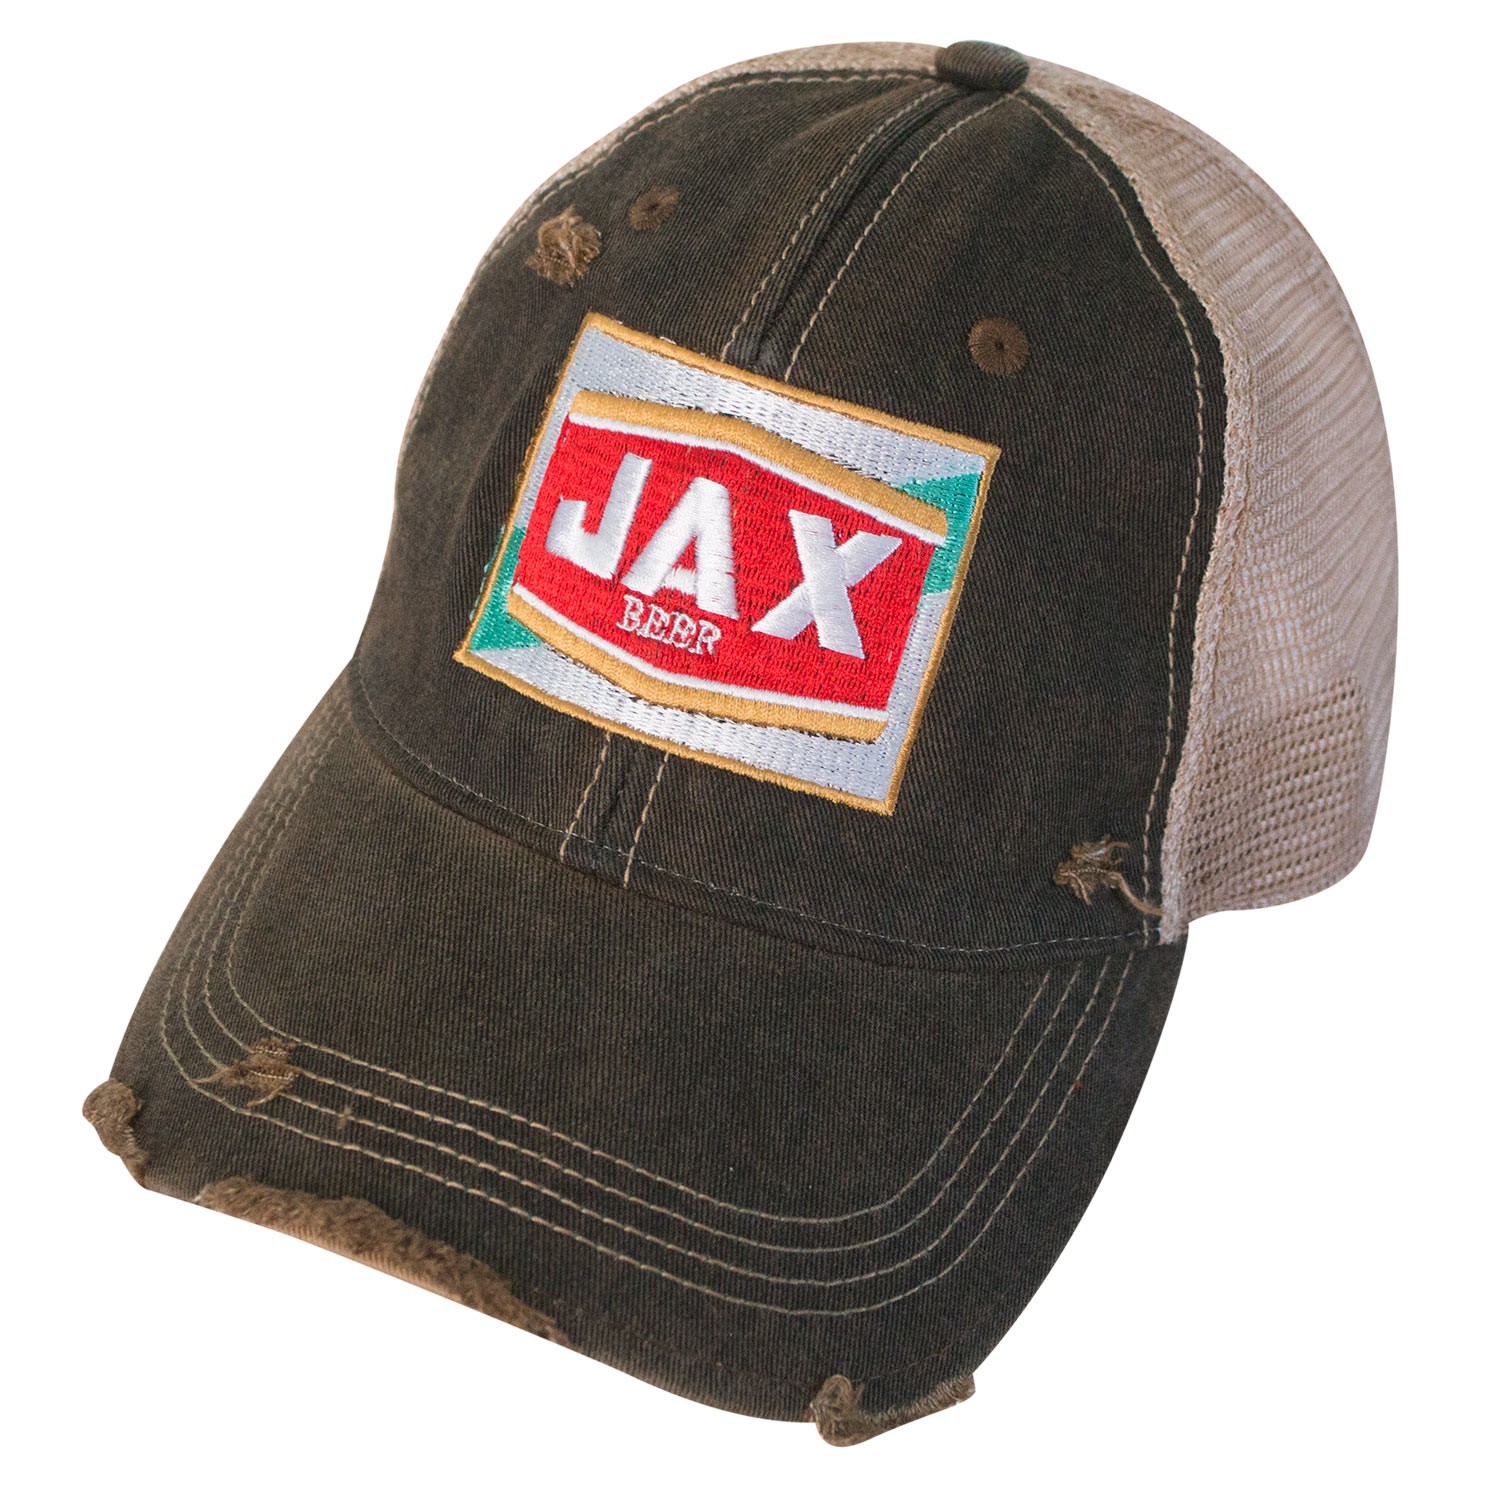 Jax Beer Vintage Mesh Hat